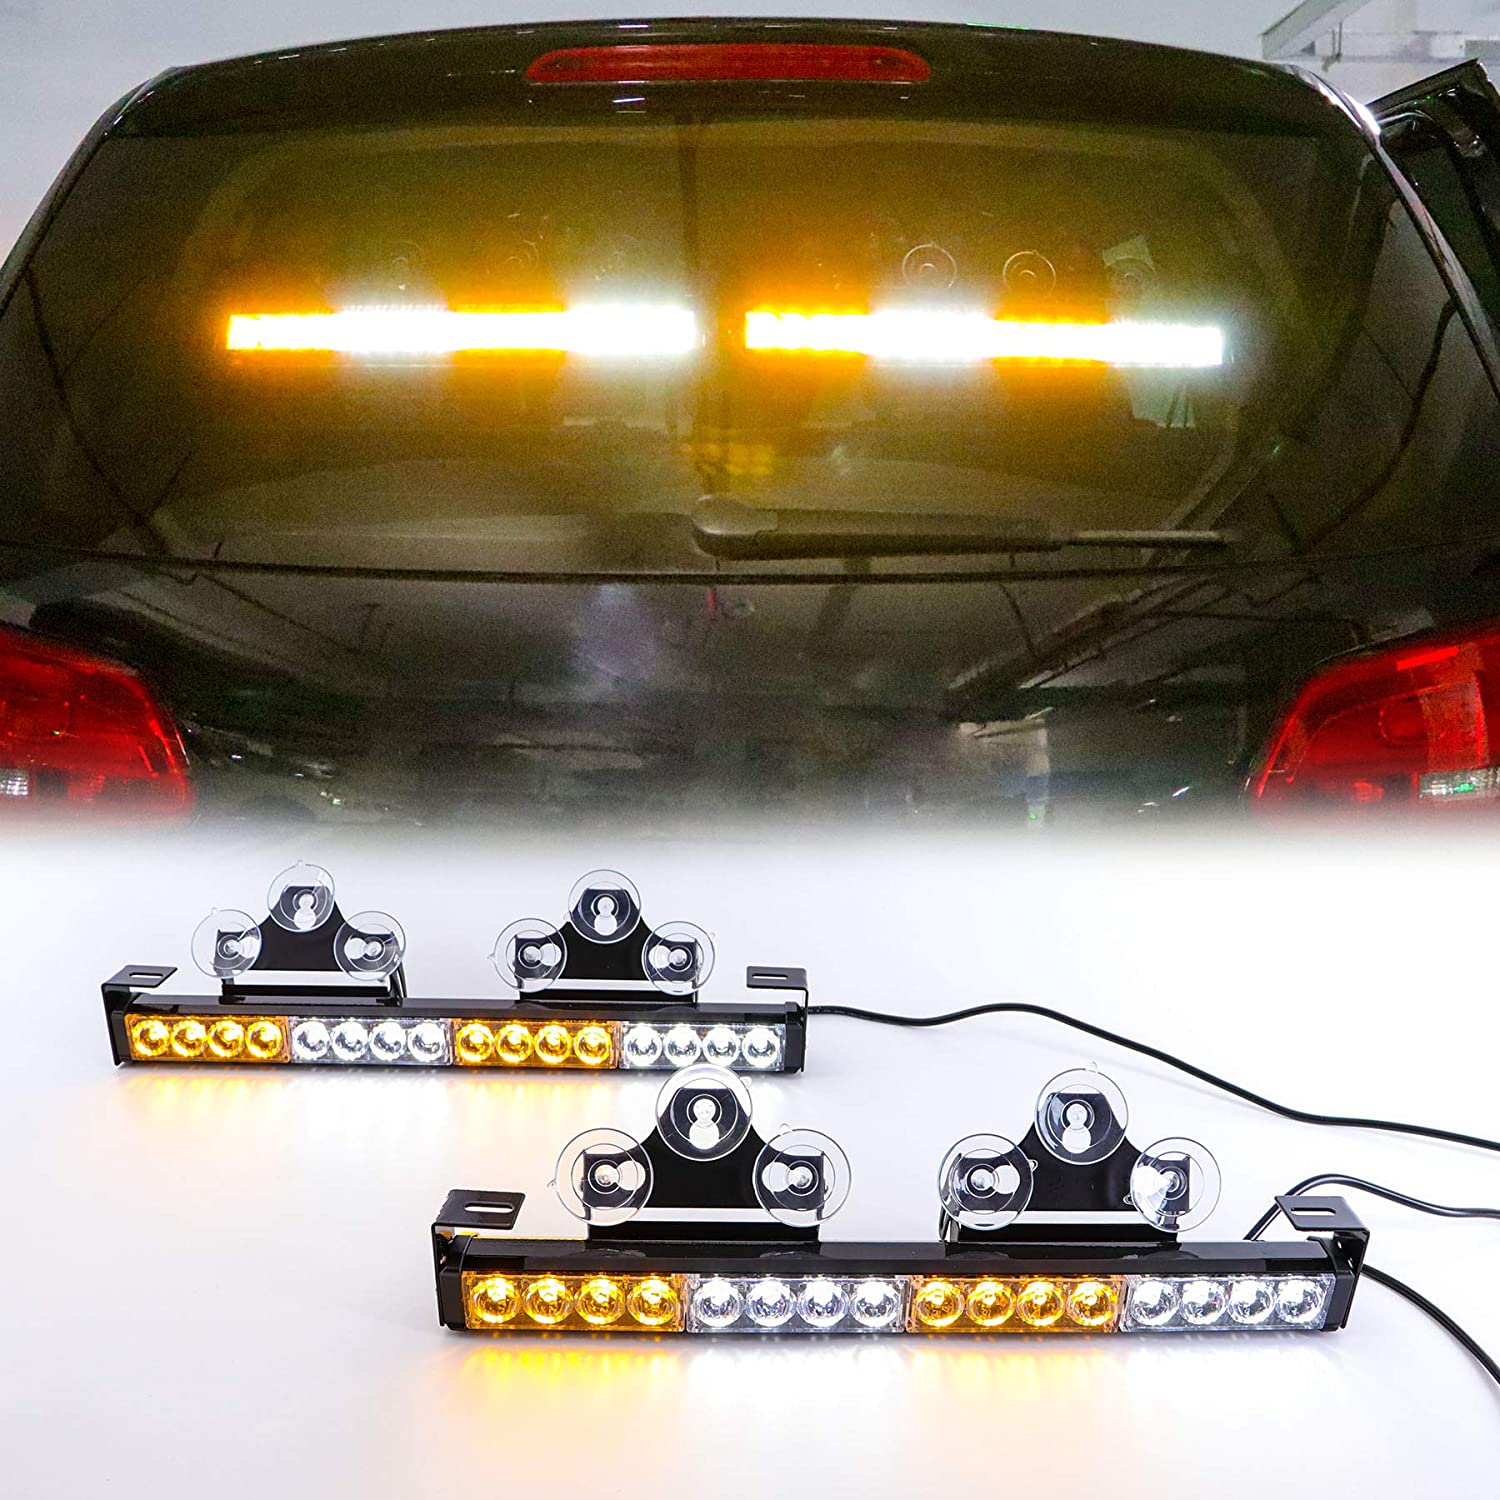 ไฟกระพริบ LED สำหรับรถยนต์ เหลือง ขาว หลากสี